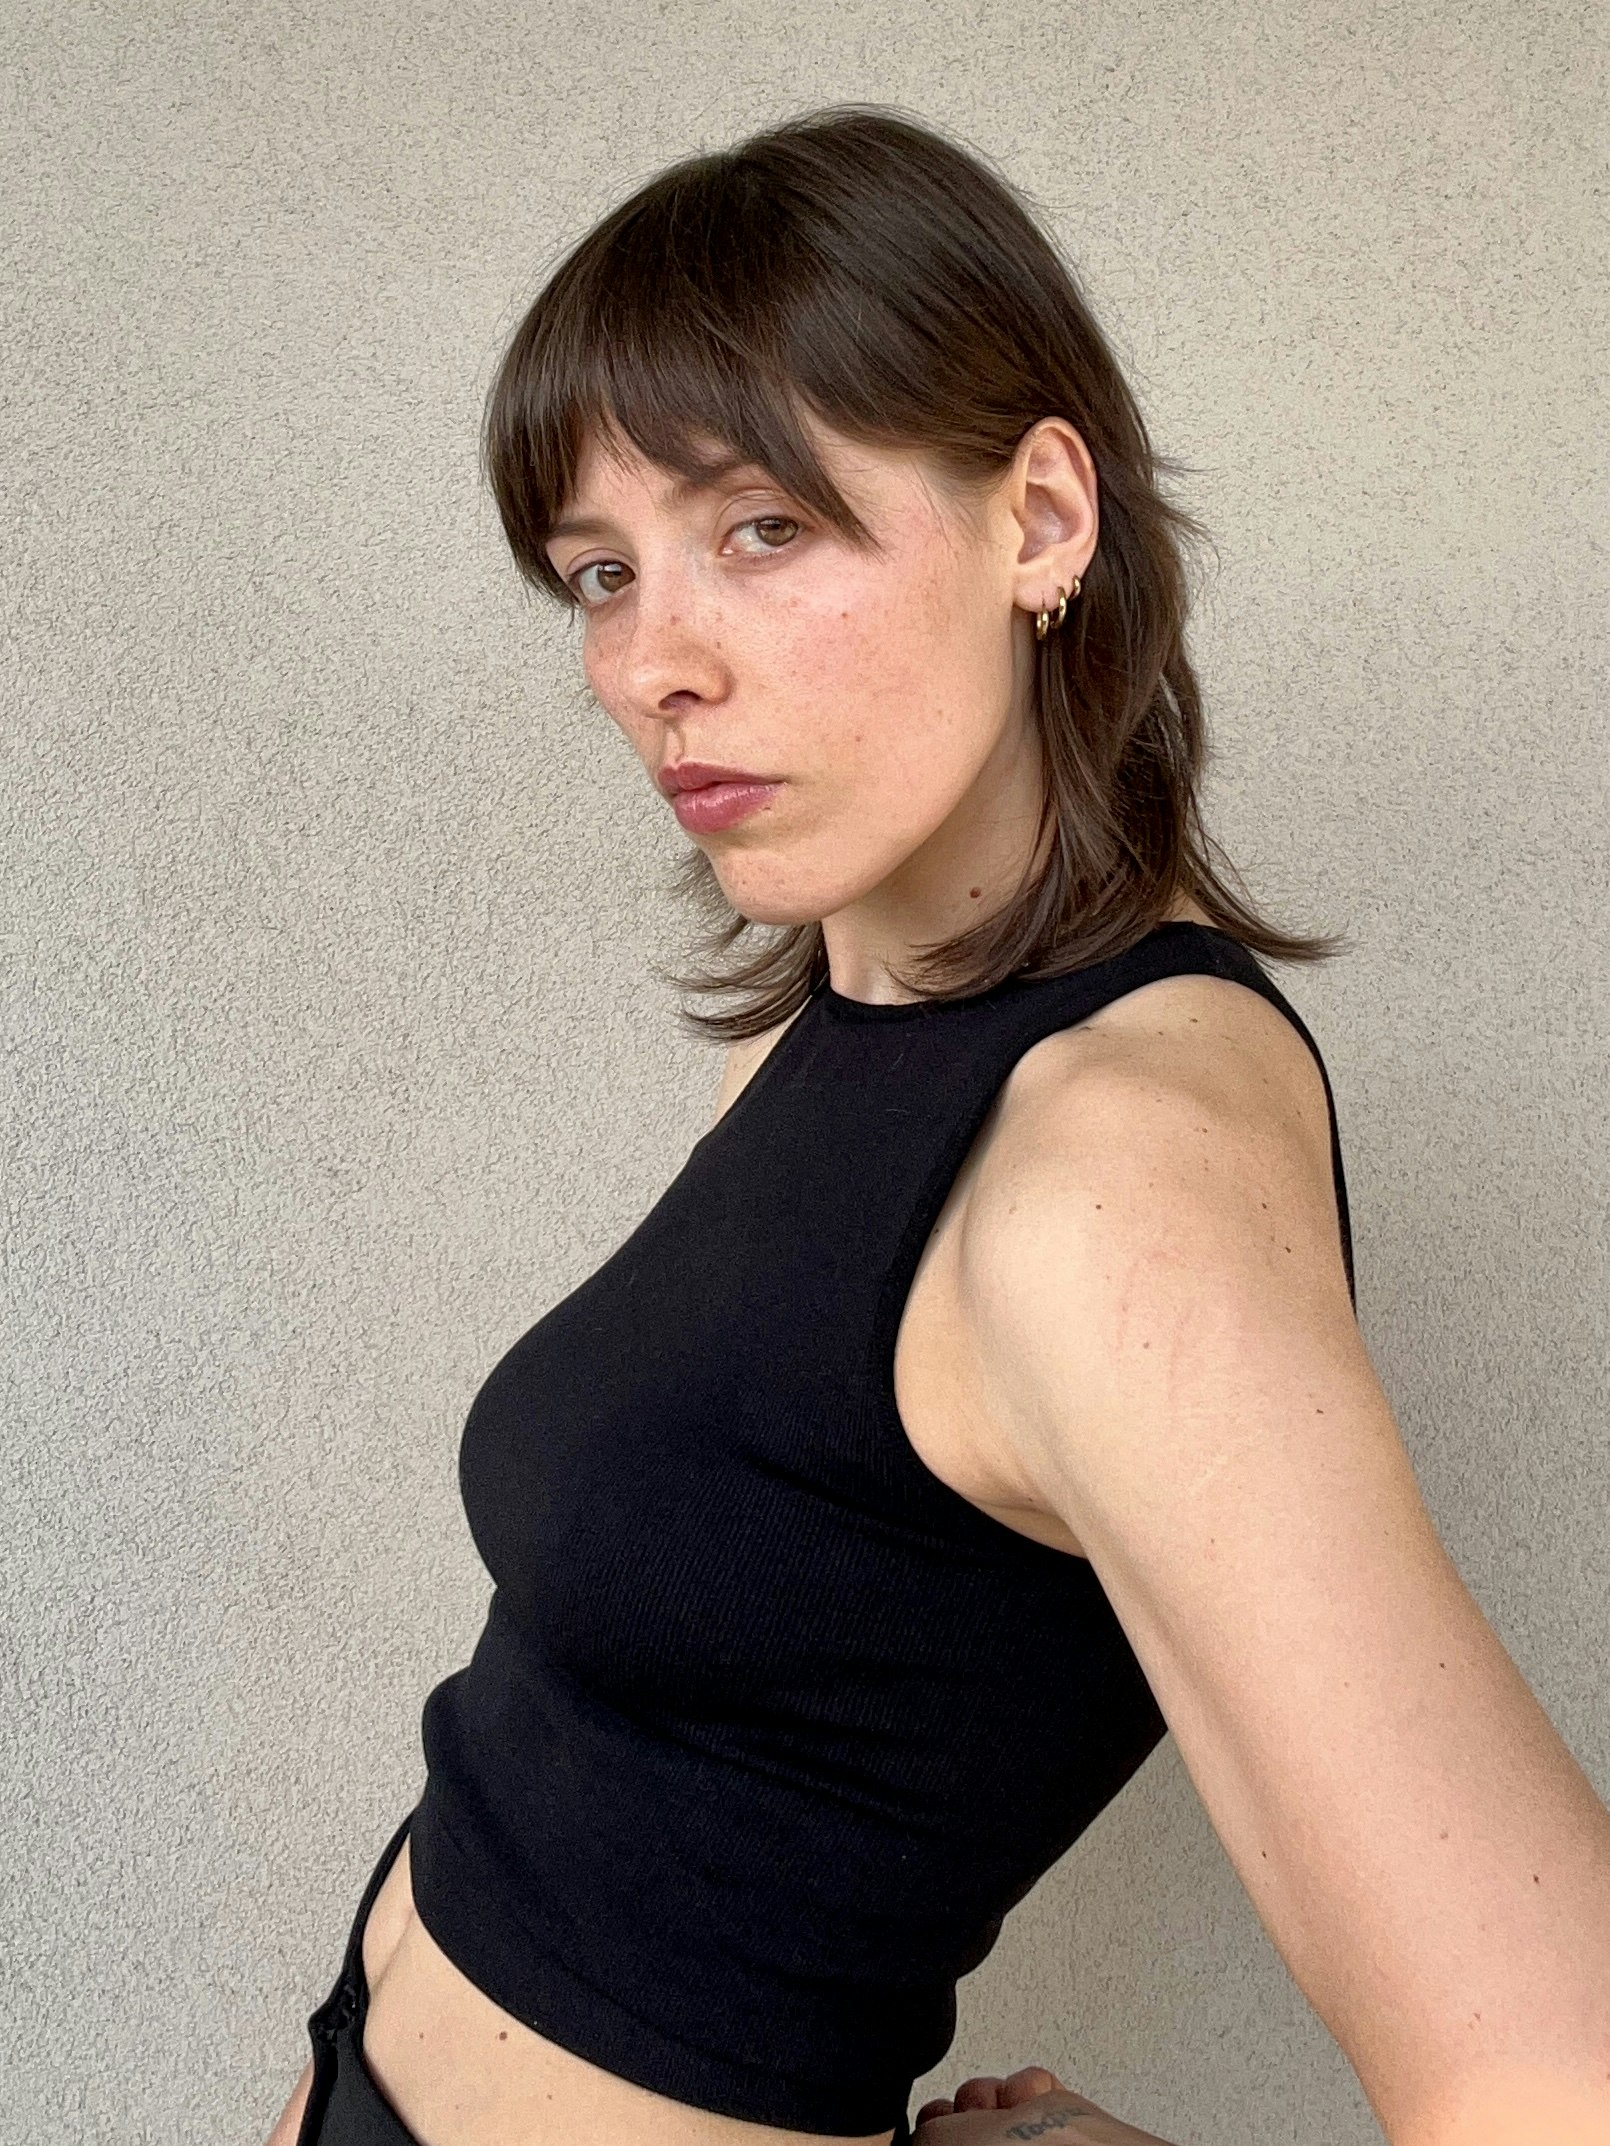 An image of Valeria Stefanelli